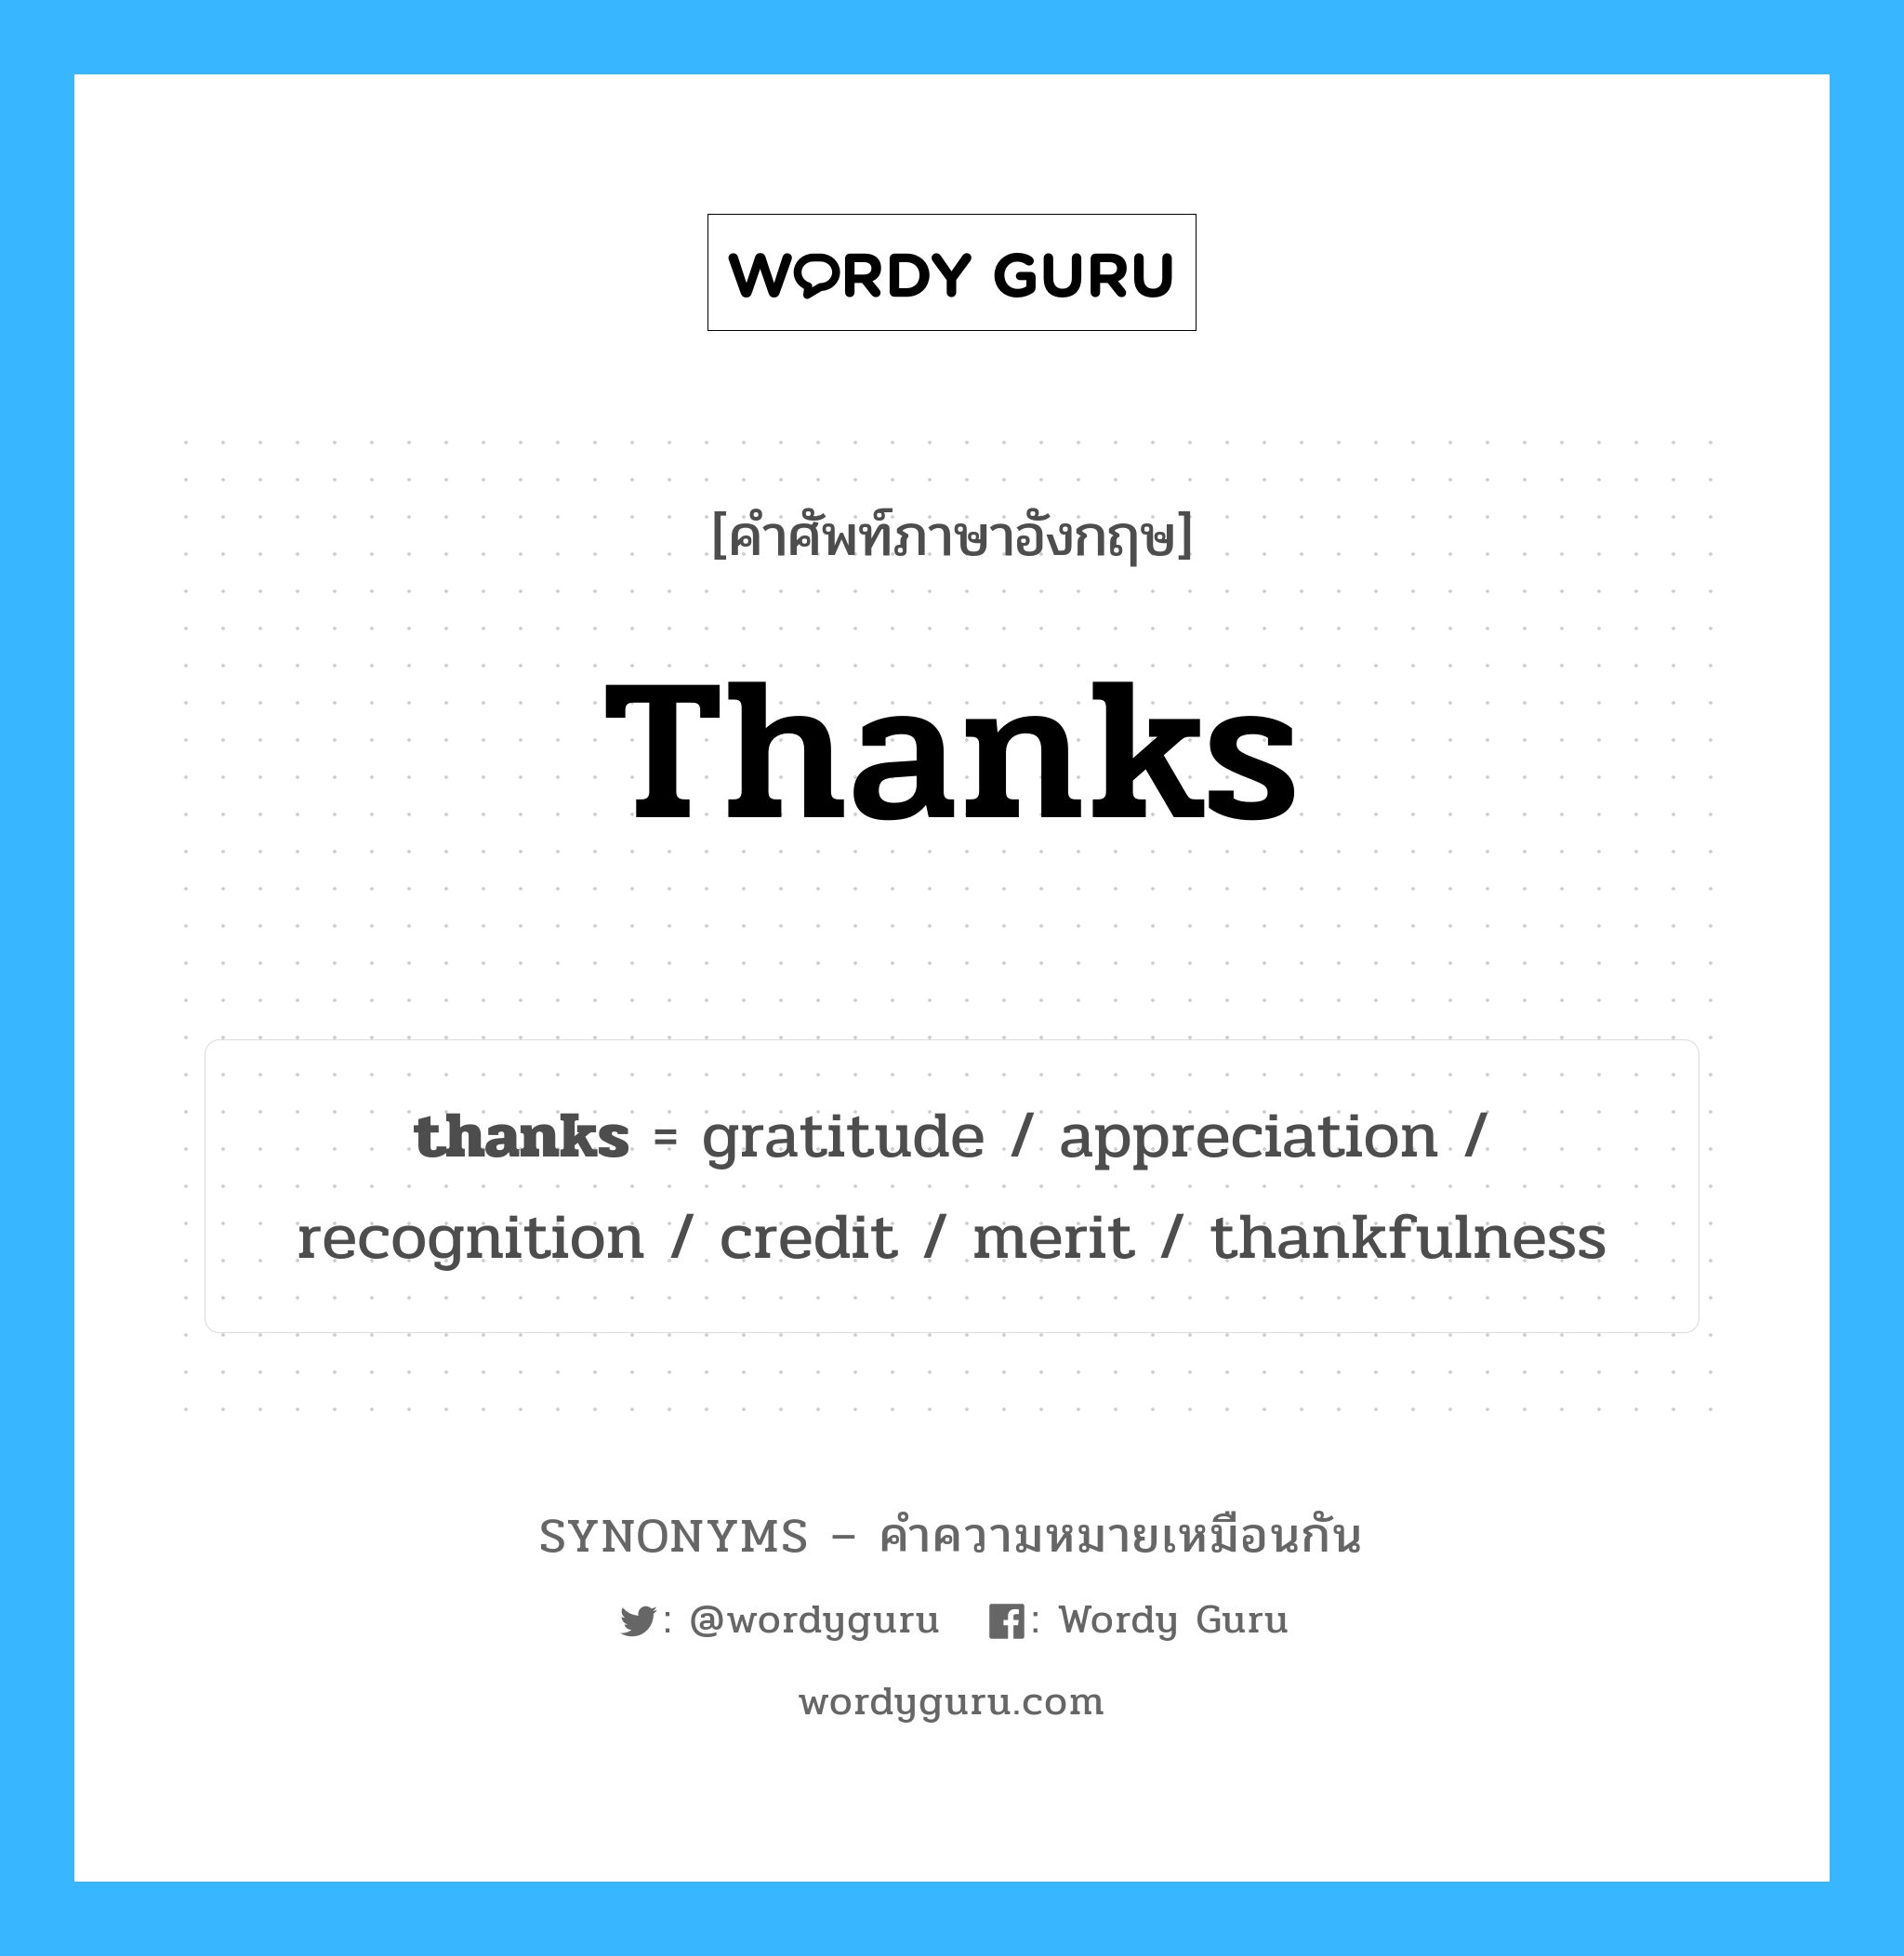 merit เป็นหนึ่งใน thanks และมีคำอื่น ๆ อีกดังนี้, คำศัพท์ภาษาอังกฤษ merit ความหมายคล้ายกันกับ thanks แปลว่า บุญ หมวด thanks